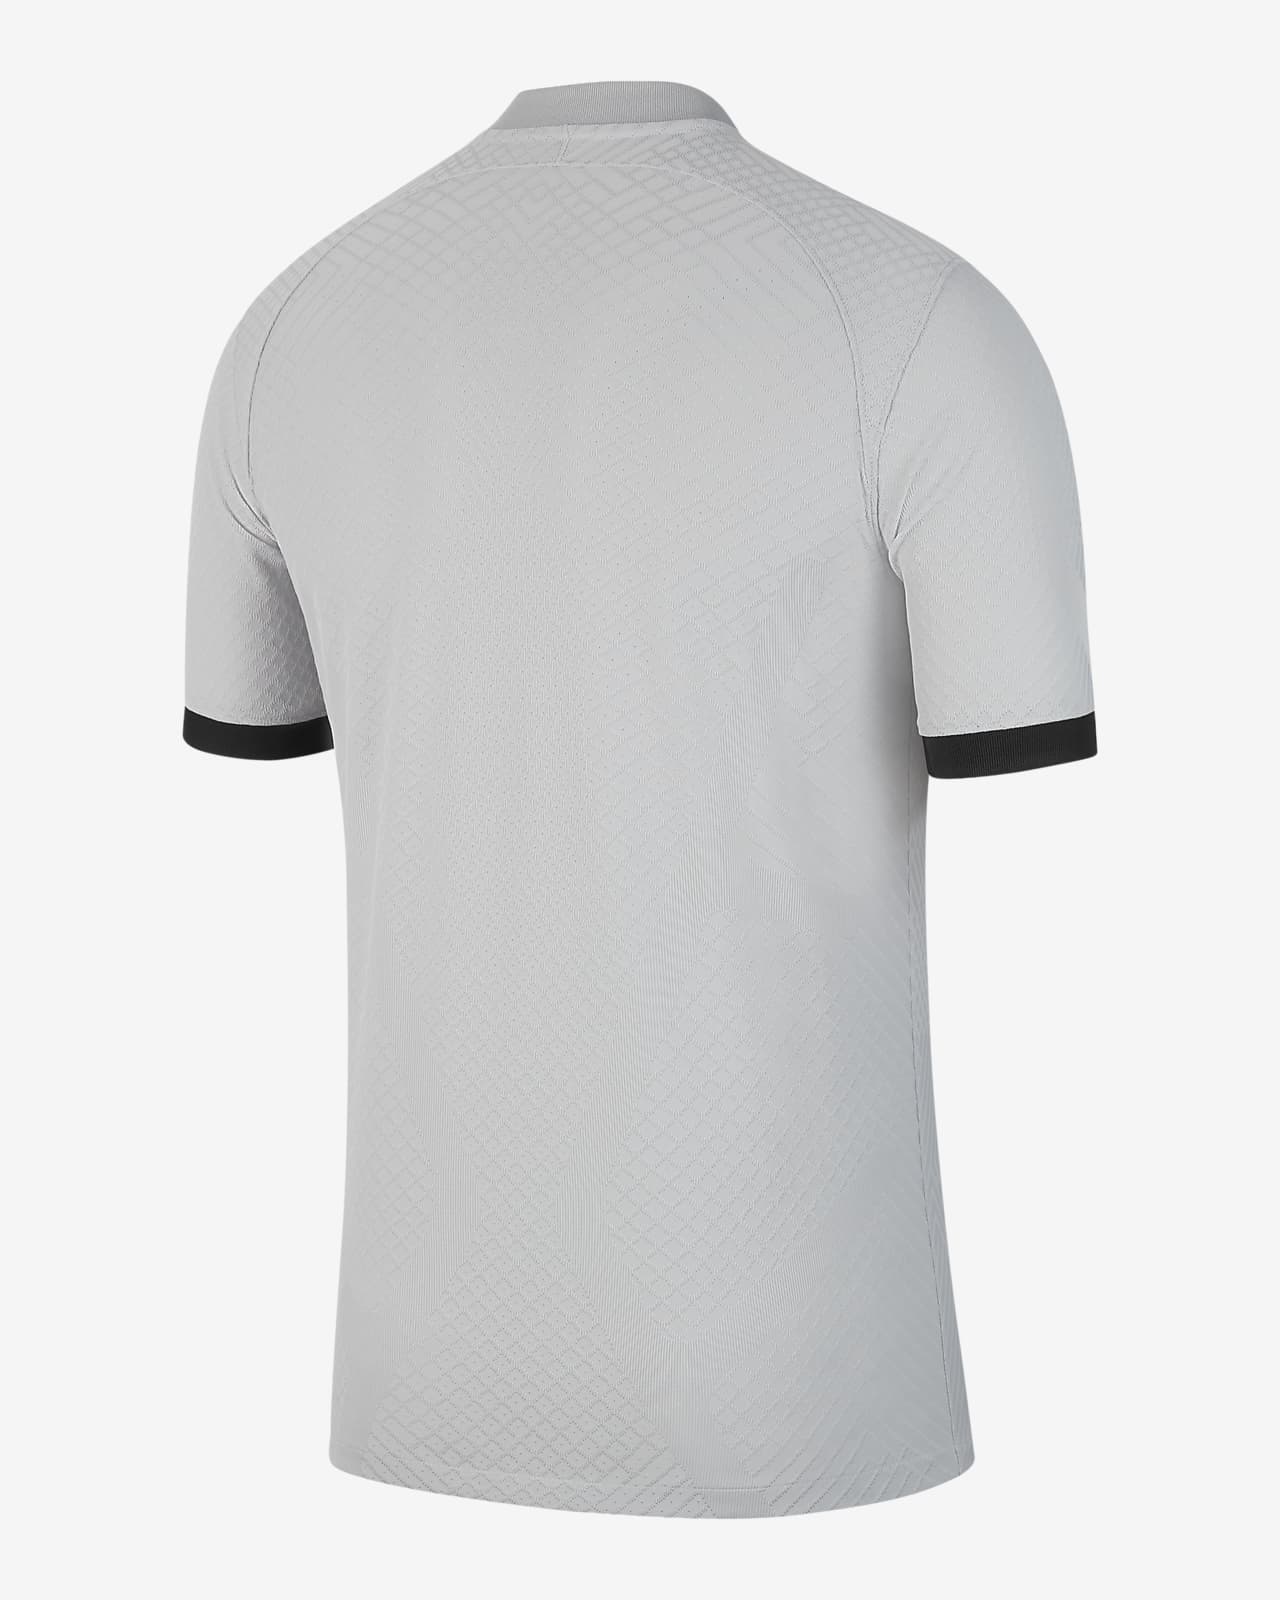 Segunda equipación Match París Saint-Germain 2022/23 Camiseta Nike ADV de fútbol Hombre. Nike ES